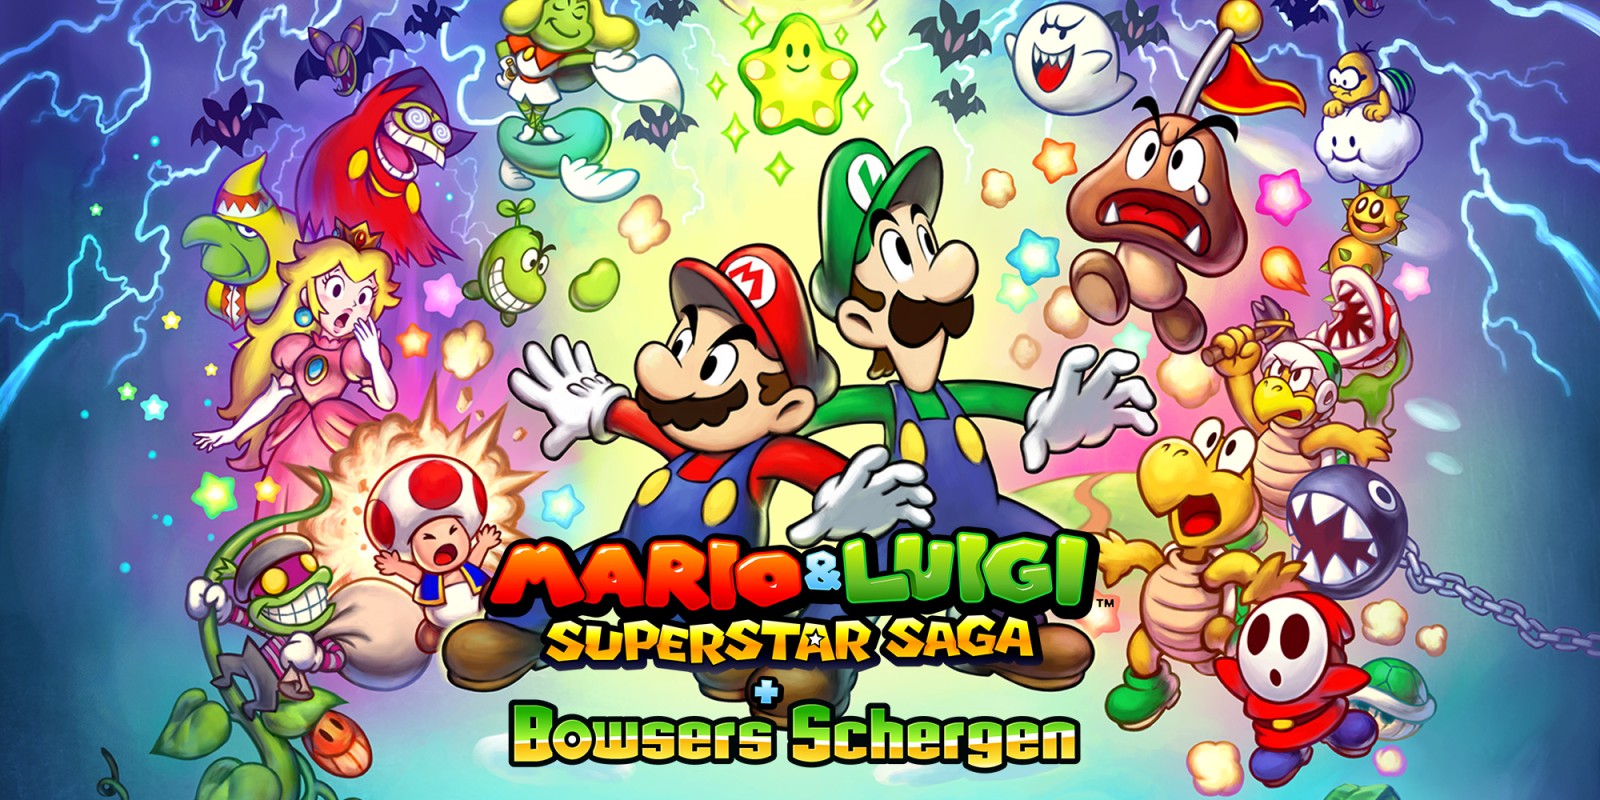 Mario & Luigi: Superstar Saga + Bowsers Schergen bei uns im Test